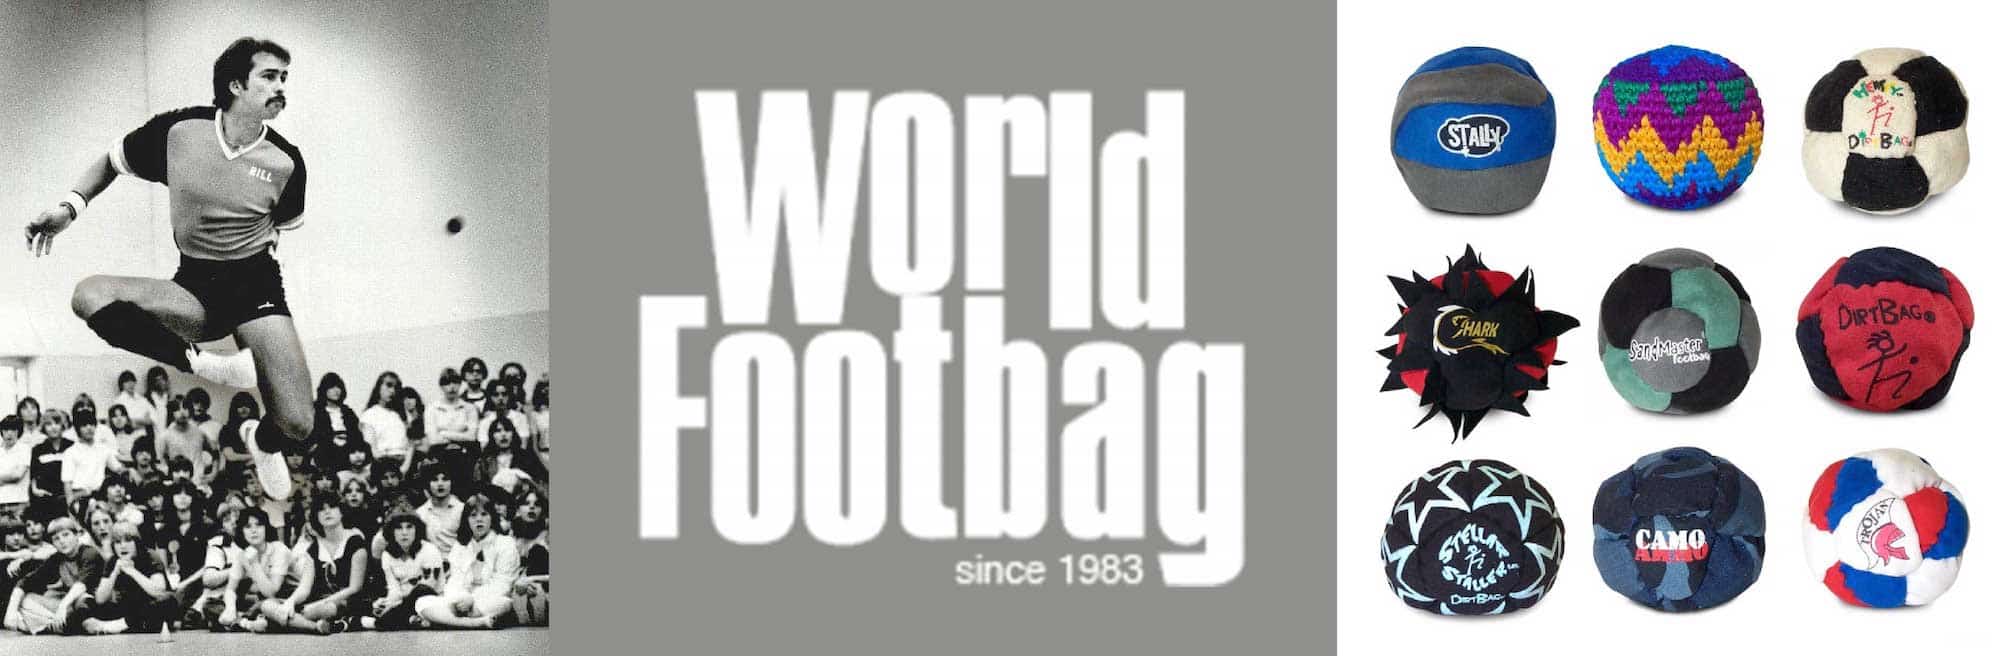 Epic Wholesale - World Footbag